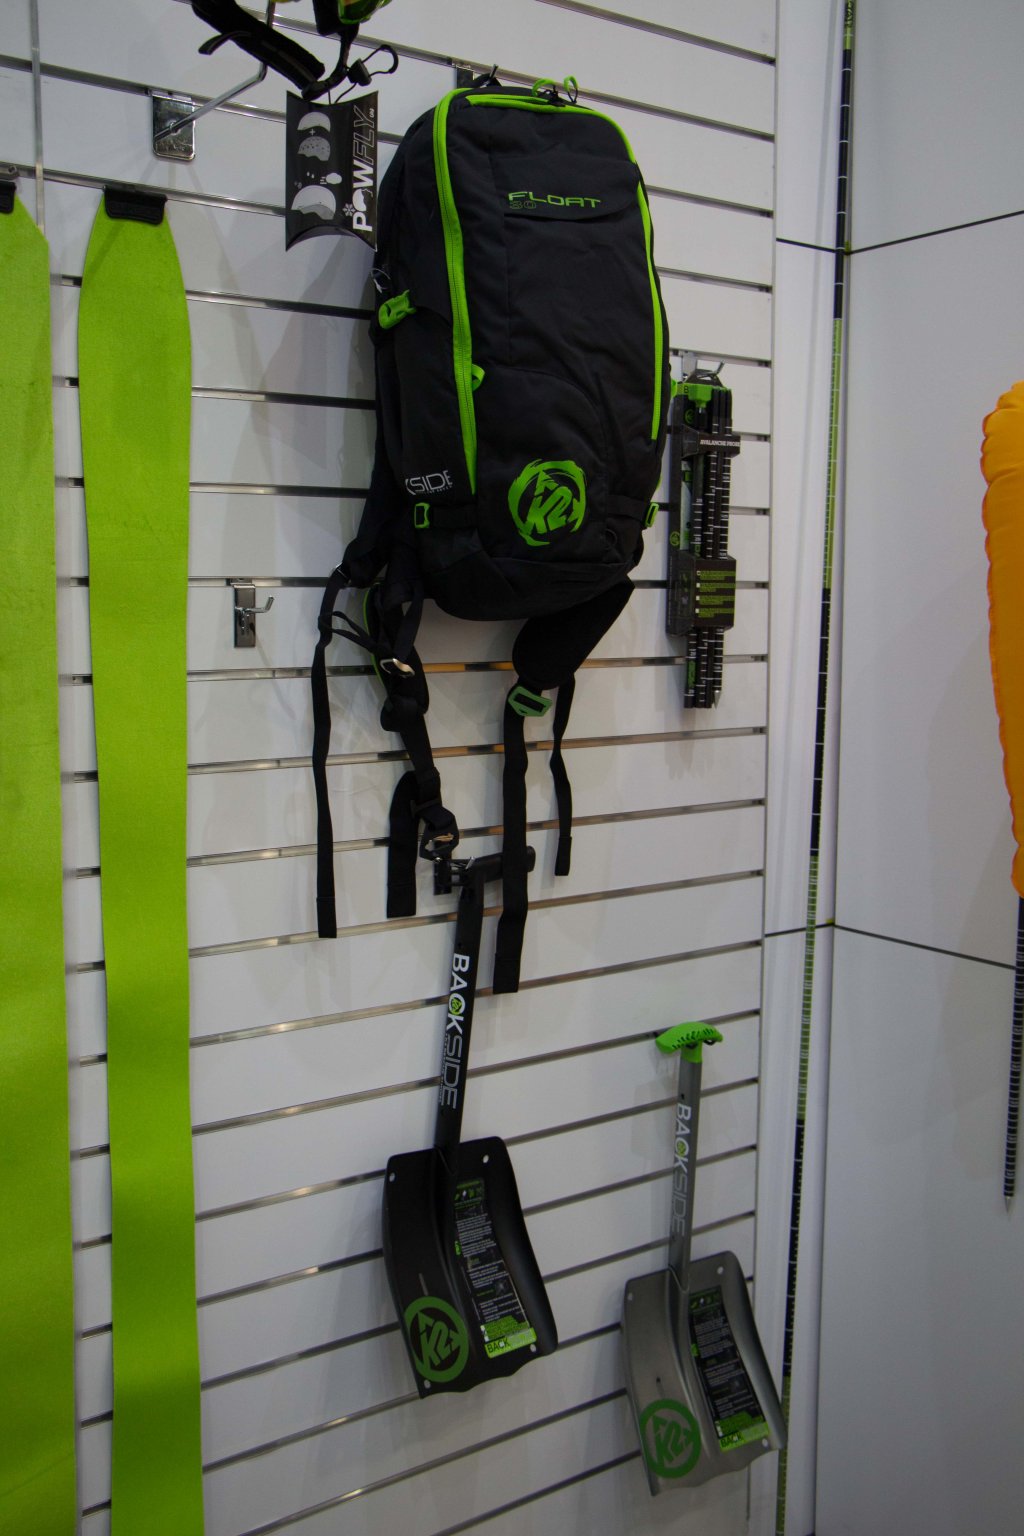 K2 BCA Float Backpack